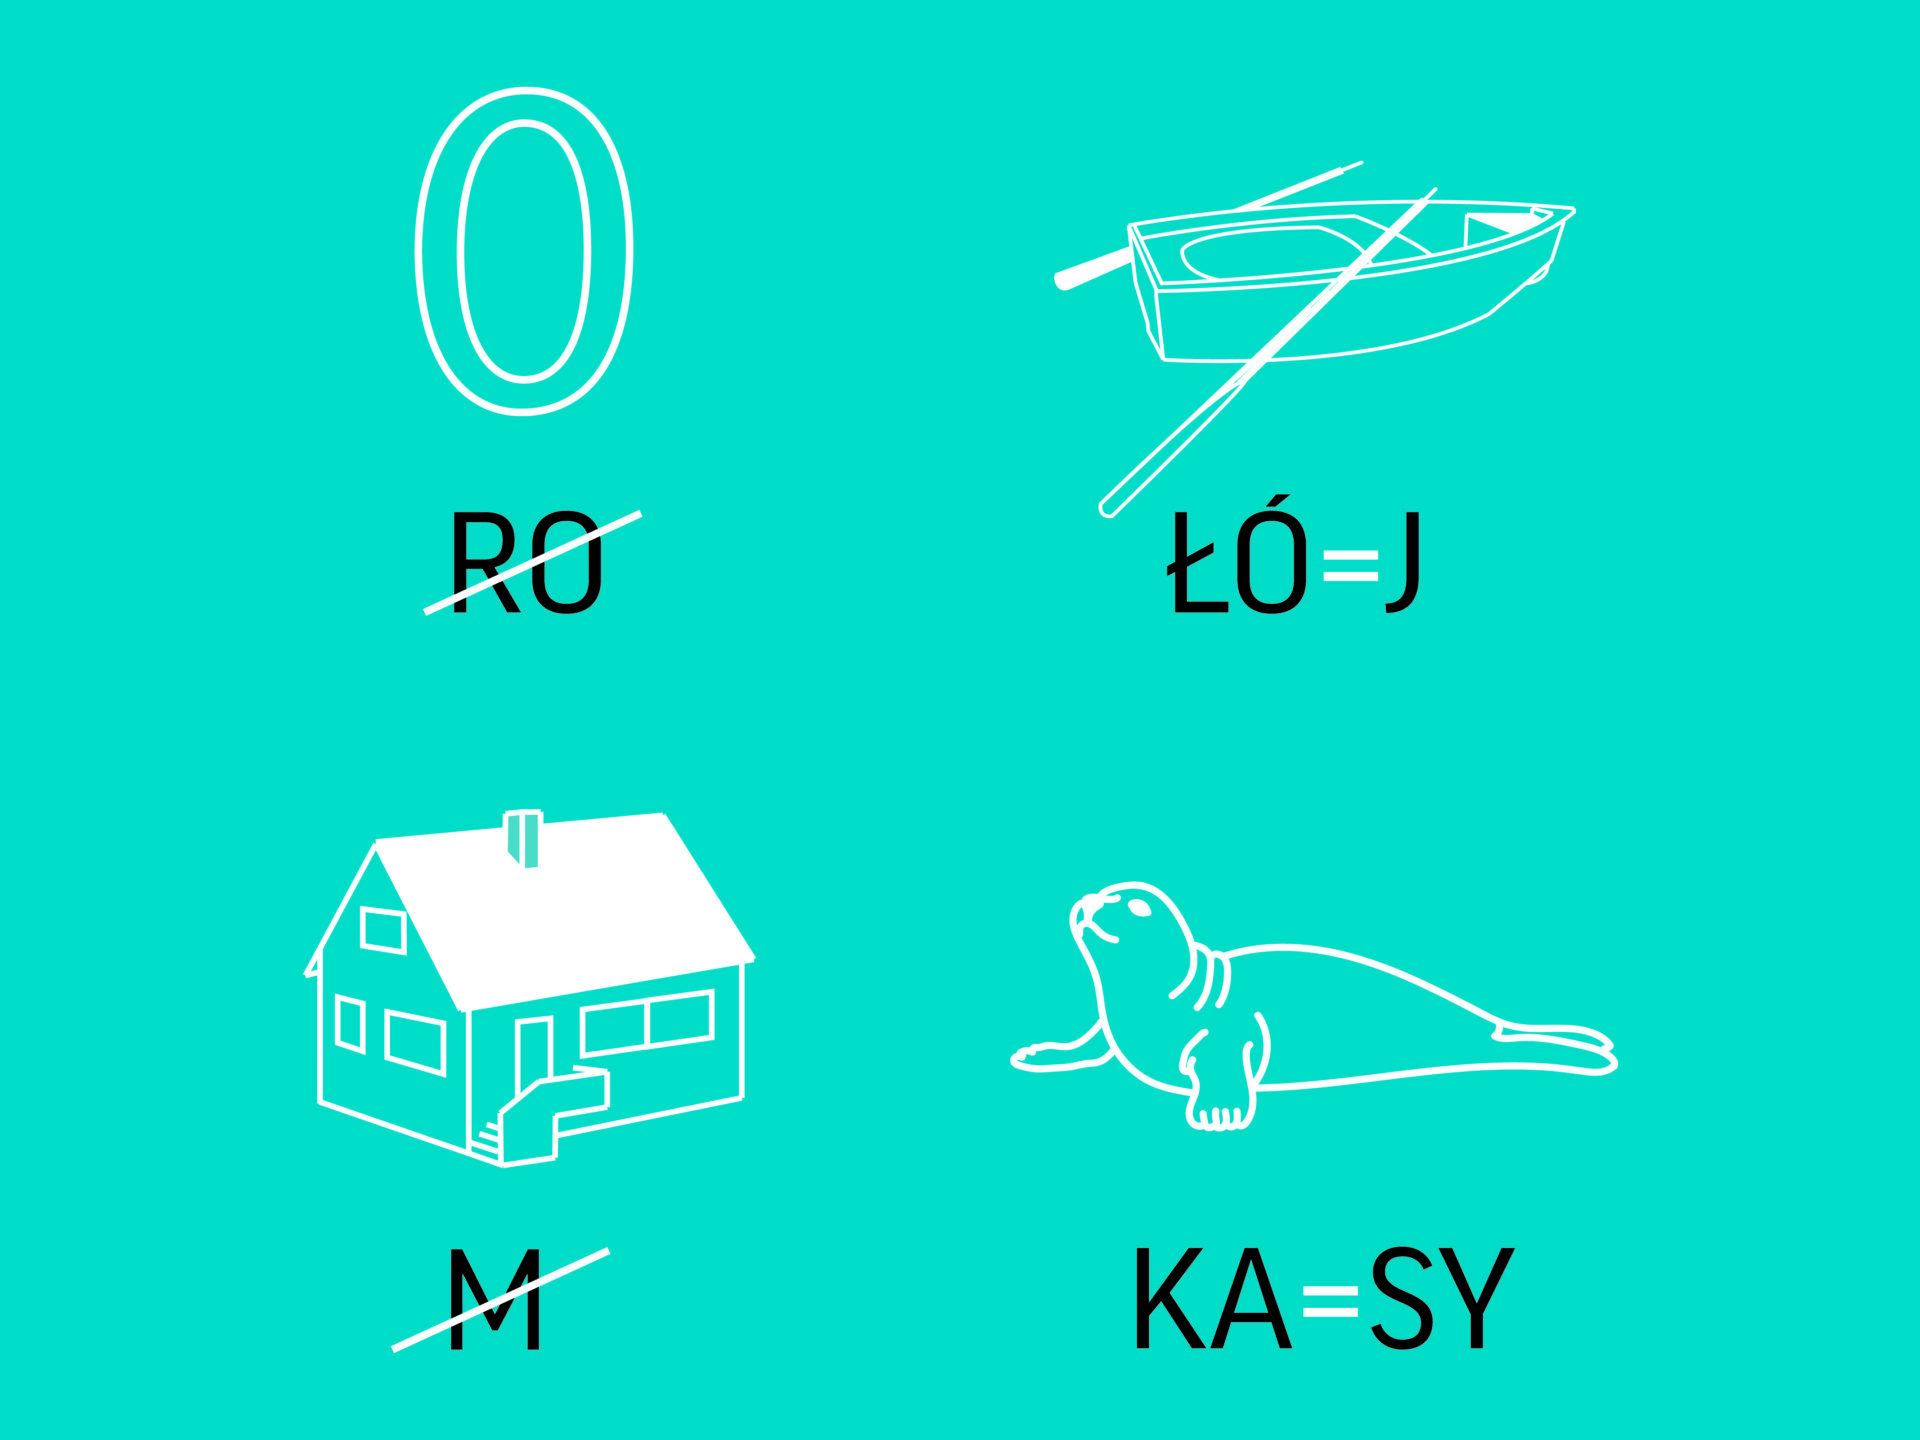 Rebus przedstawiający kolejno: zero i przekreślone “ro”, łódź i “łó”=”j”, dom i przekreślone “m”, fokę i “ka”=”sy”.